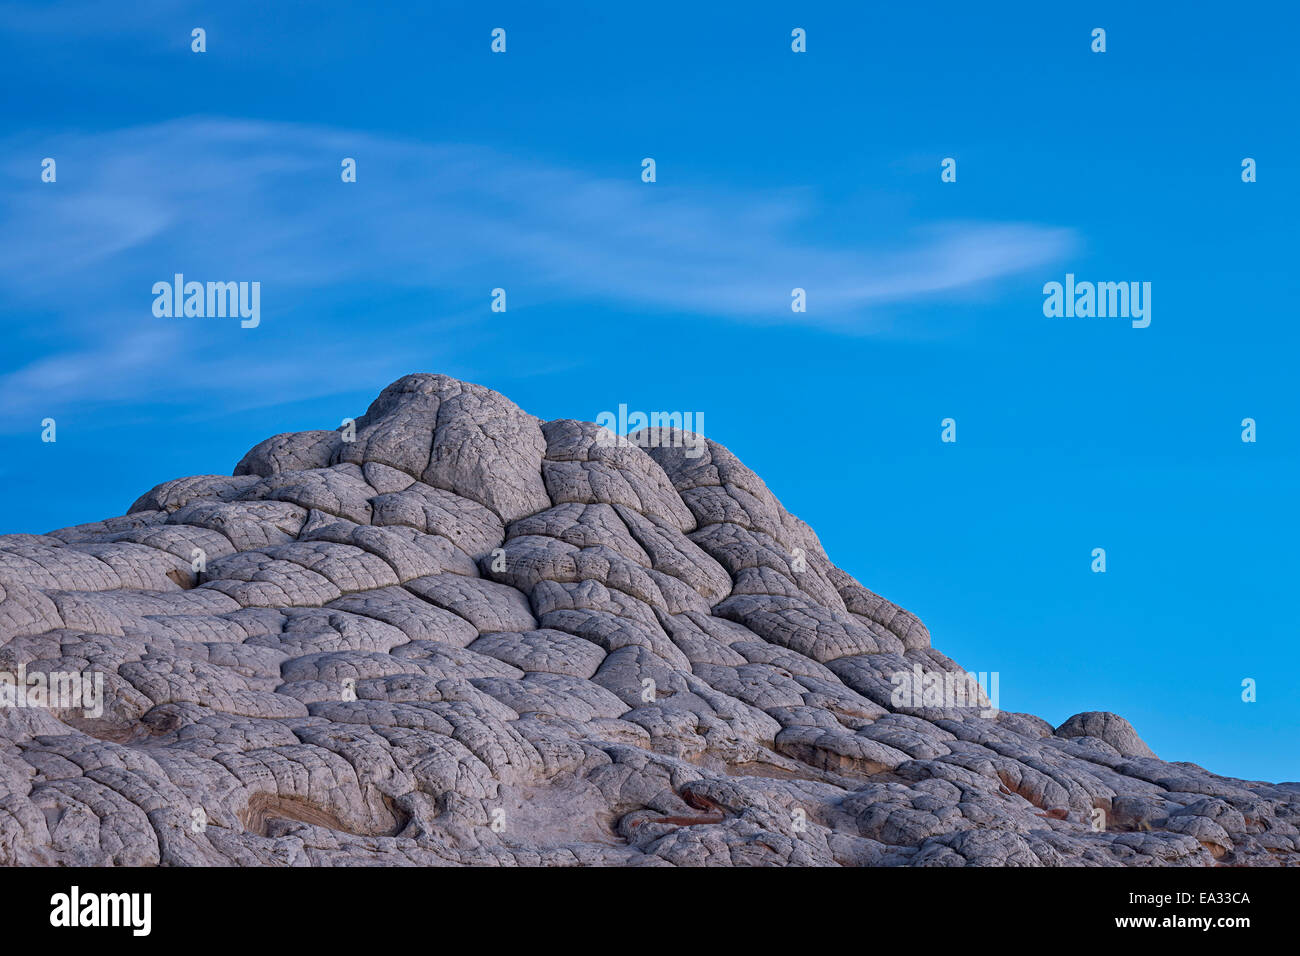 Erosionadas de piedra arenisca blanca como un cerebro, Blanco Pocket, Vermilion Cliffs National Monument, Arizona, EE.UU. Foto de stock